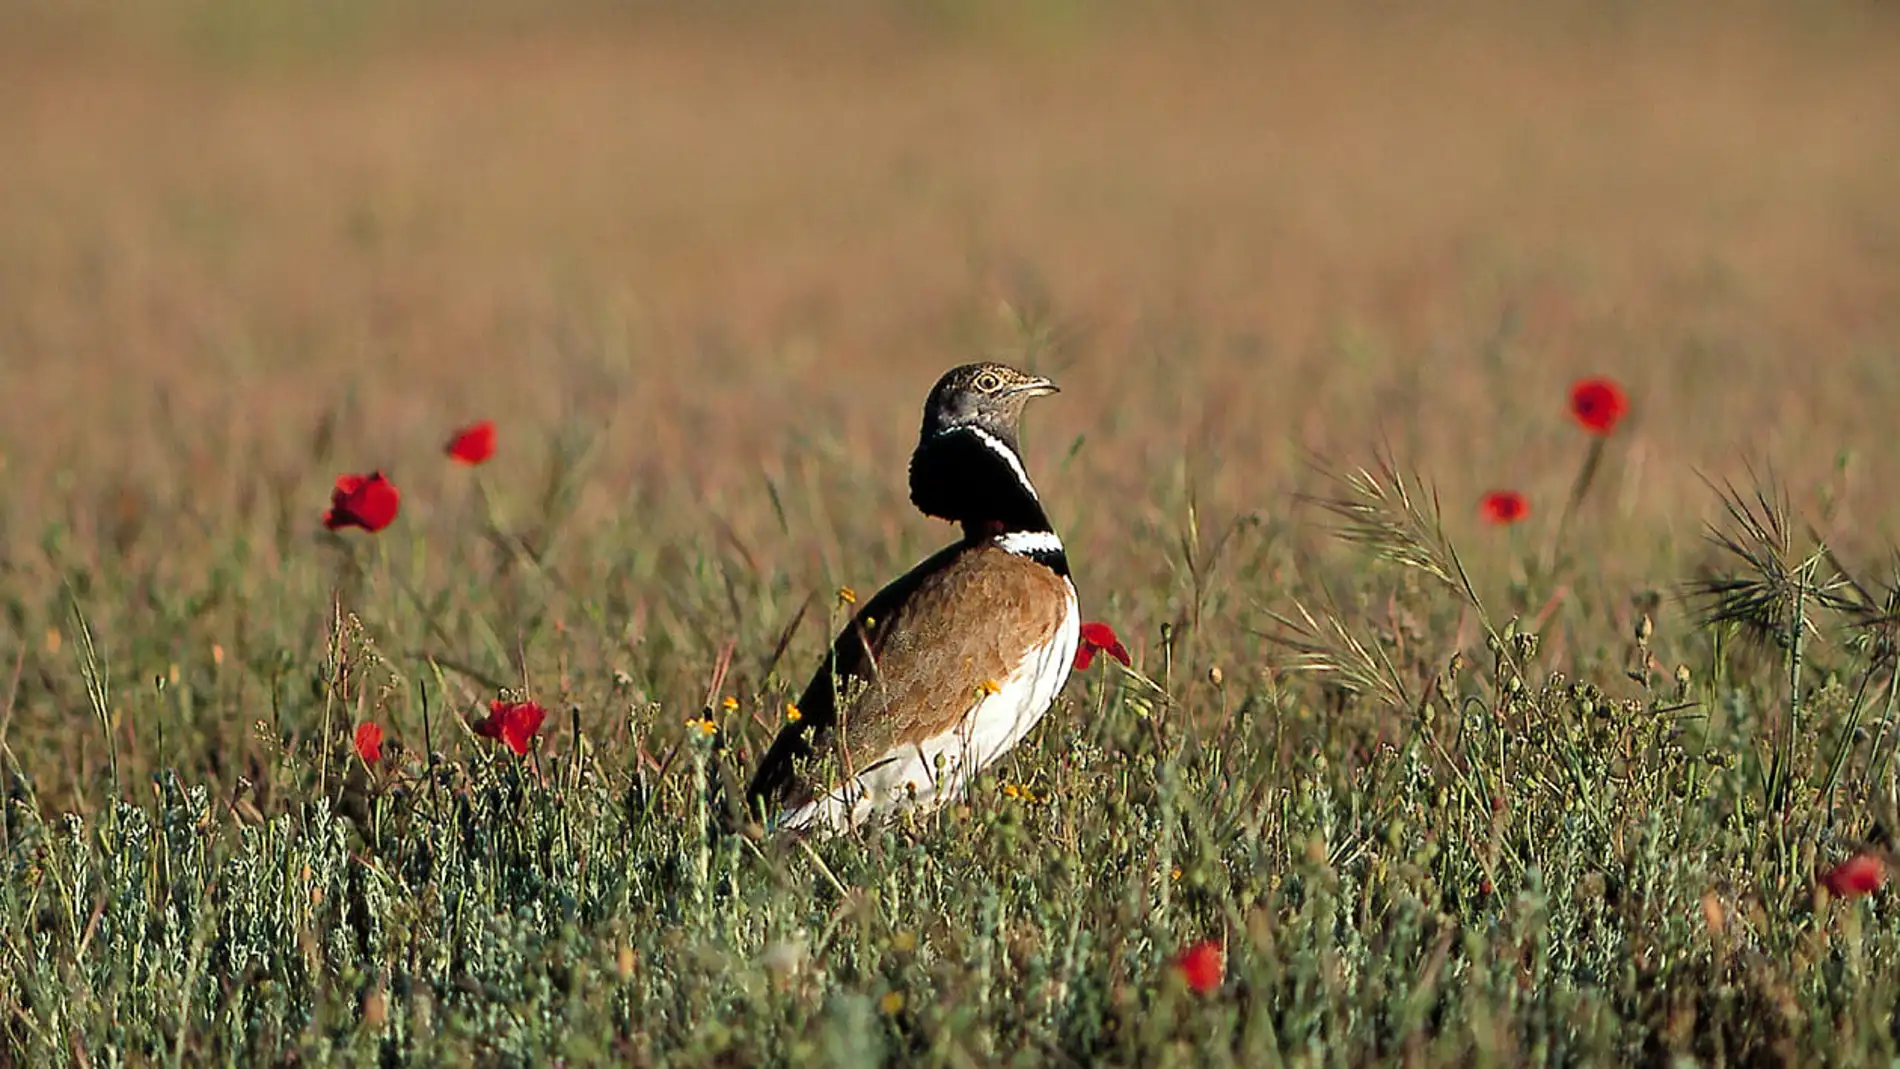 Un nuevo atlas de la avifauna iberica alerta sobre la perdida de biodiversidad